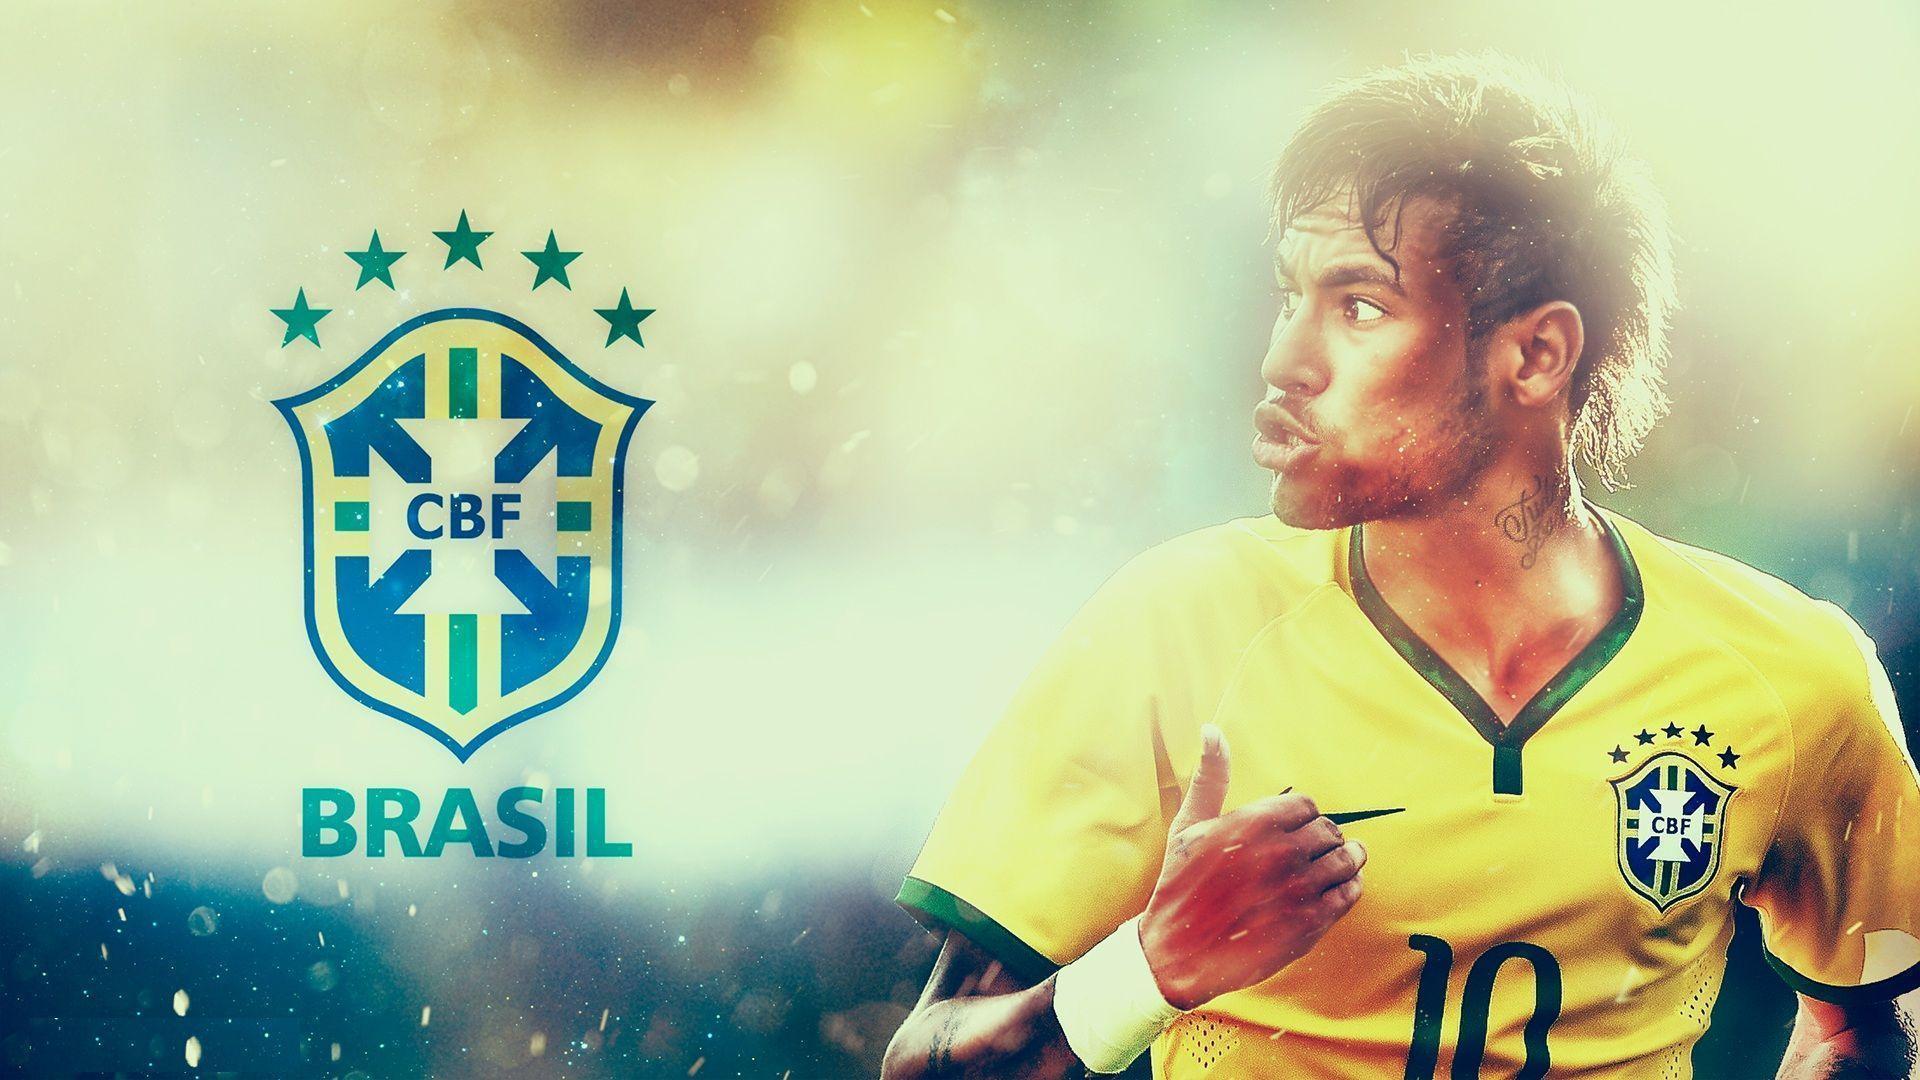 Brazilian Player Neymar High Resolution Wallpaper For Desktop